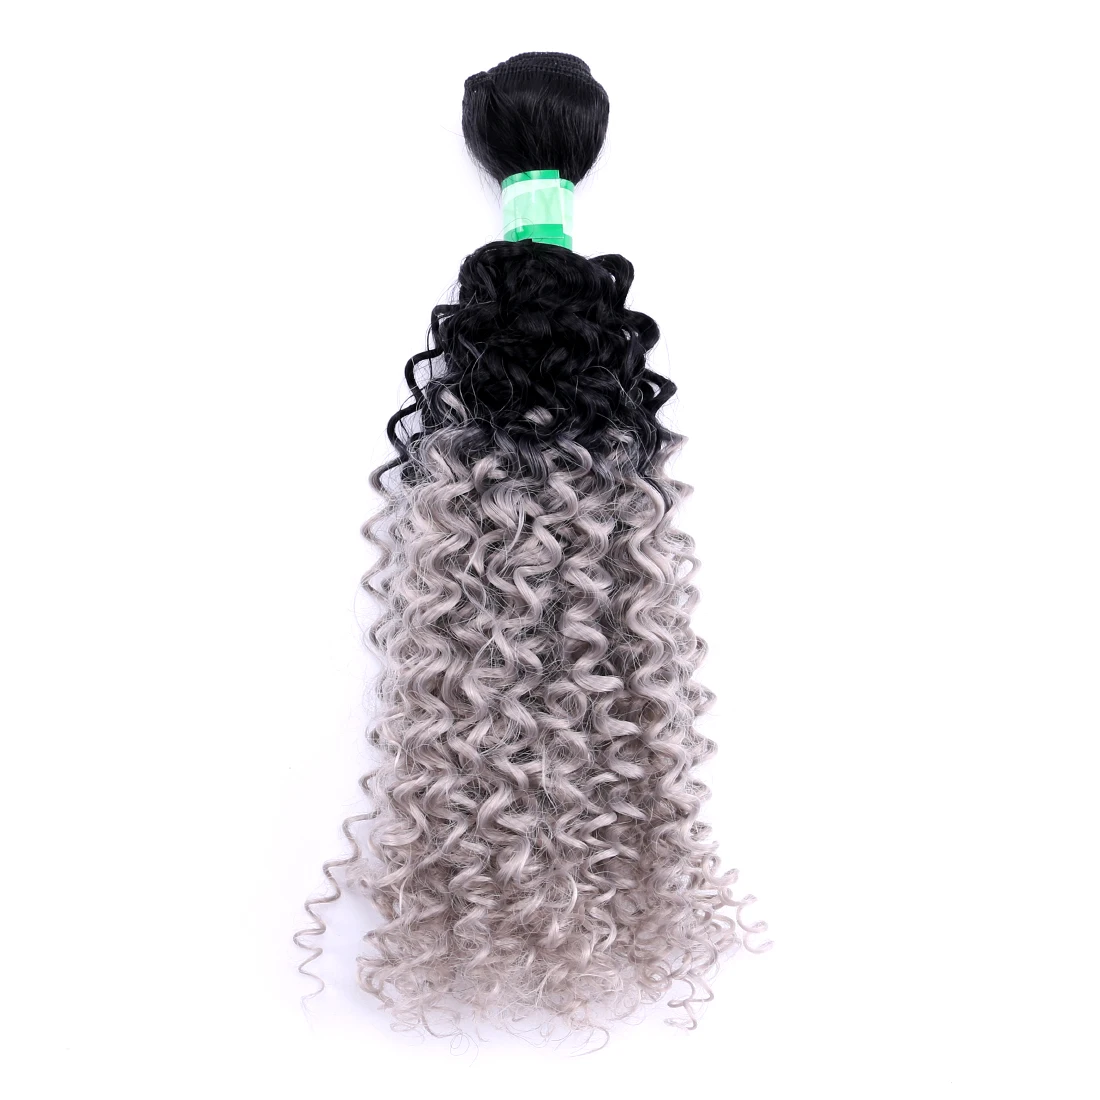 Афро кудрявые вьющиеся волосы черного цвета термостойкие синтетические волосы для наращивания 70 г/шт. пучок волос для женщин